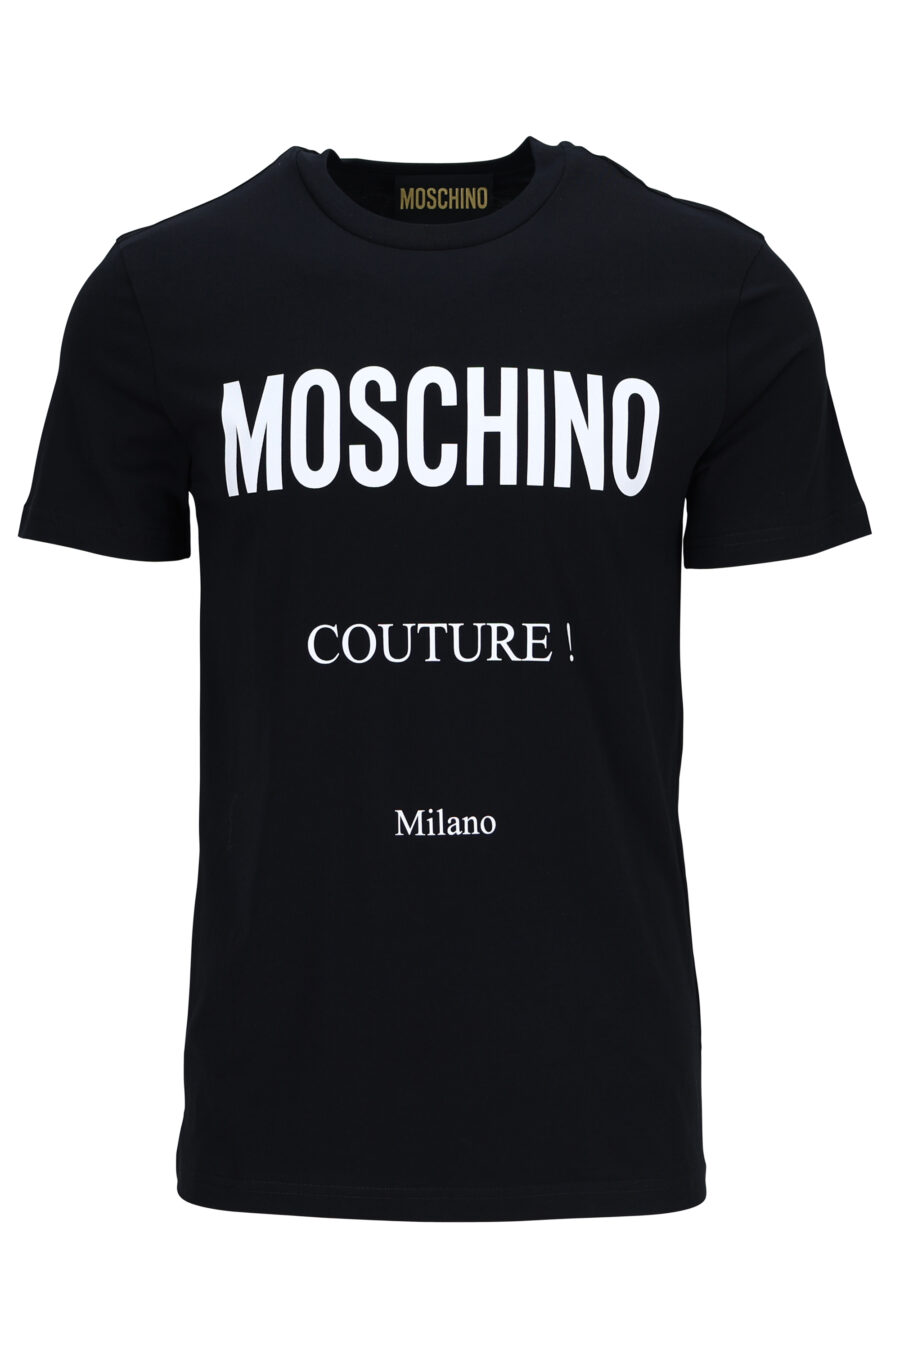 T-shirt preta com maxilogo "couture milano" - 889316936551